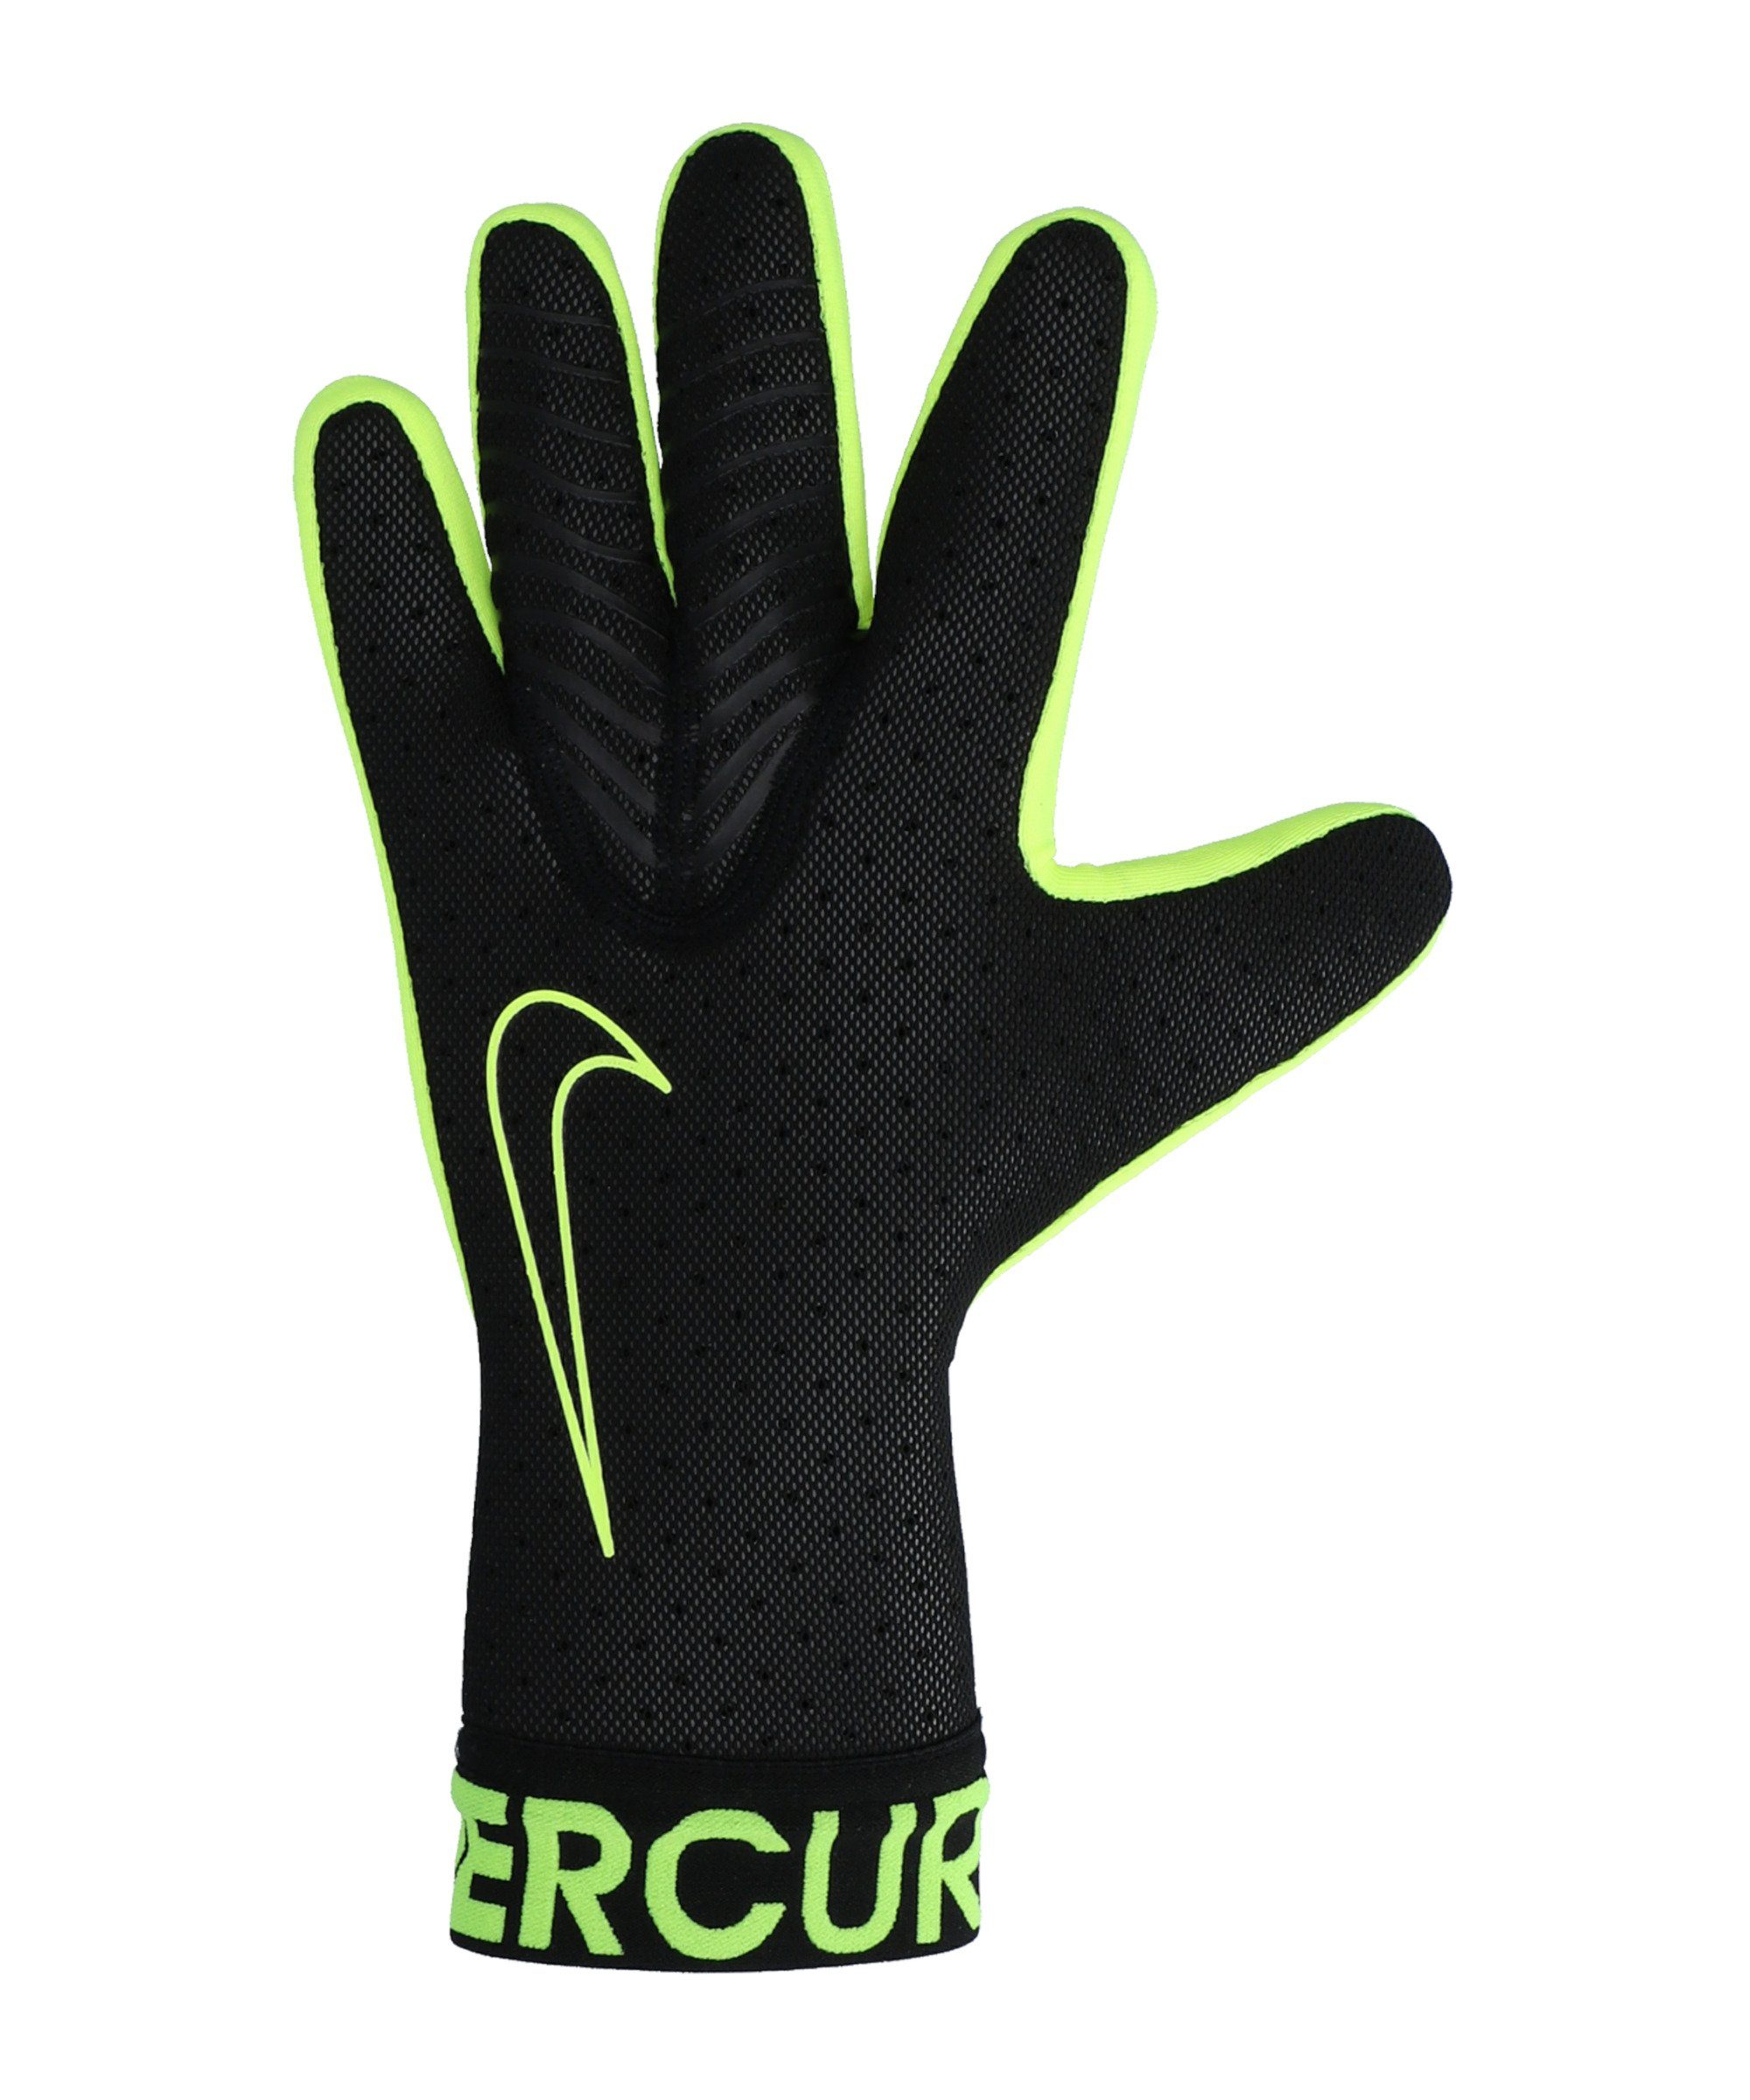 Nike Torwarthandschuhe »Mercurial Touch Elite Promo TW-Handschuh« online  kaufen | OTTO